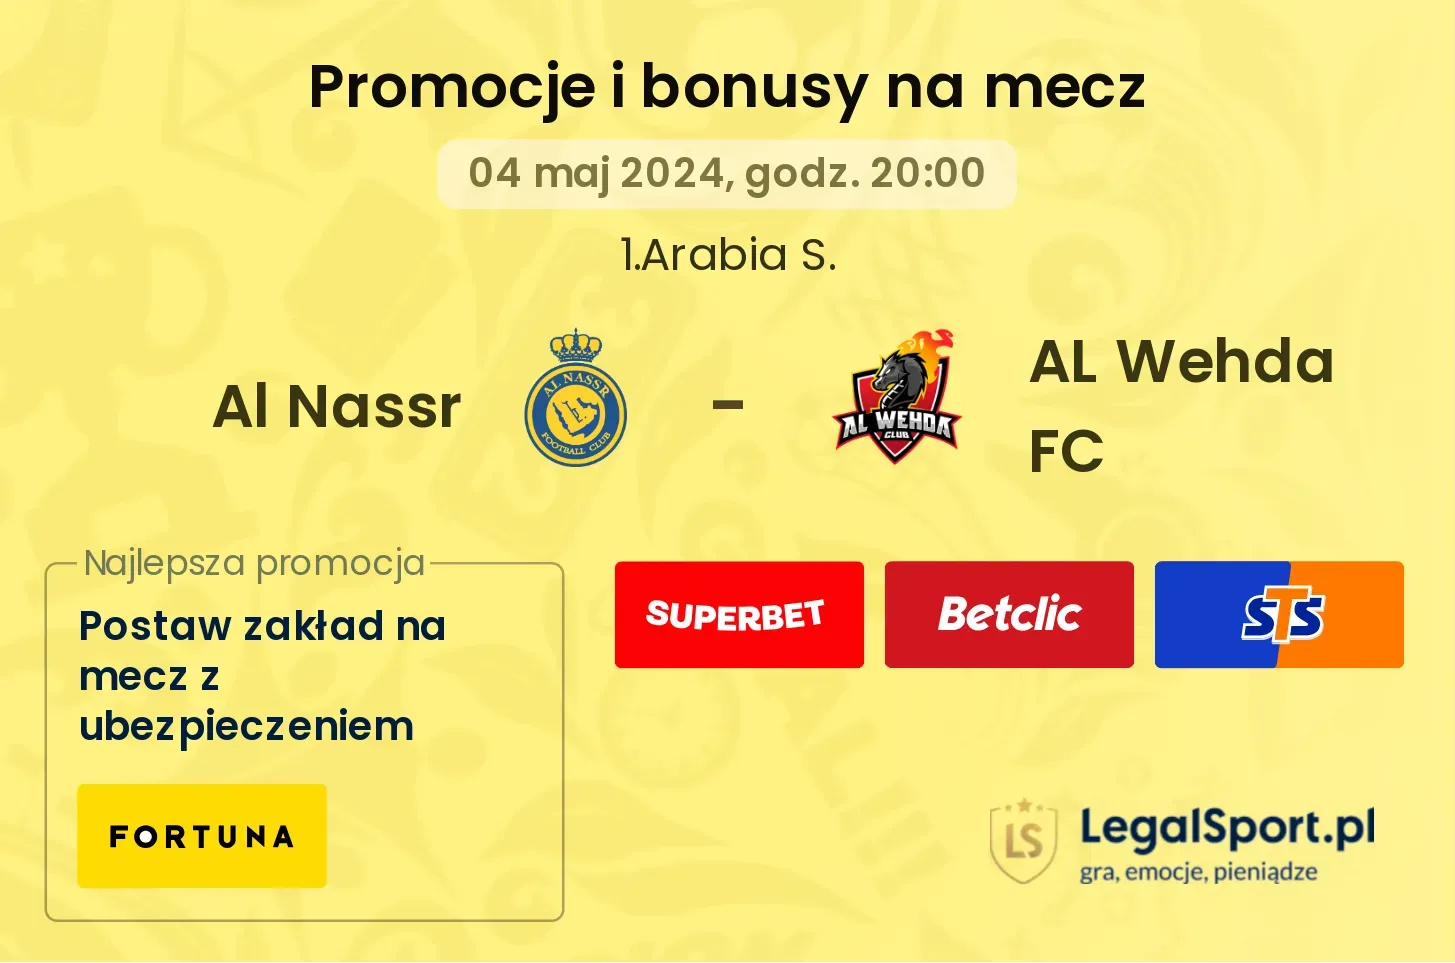 Al Nassr - AL Wehda FC promocje bonusy na mecz